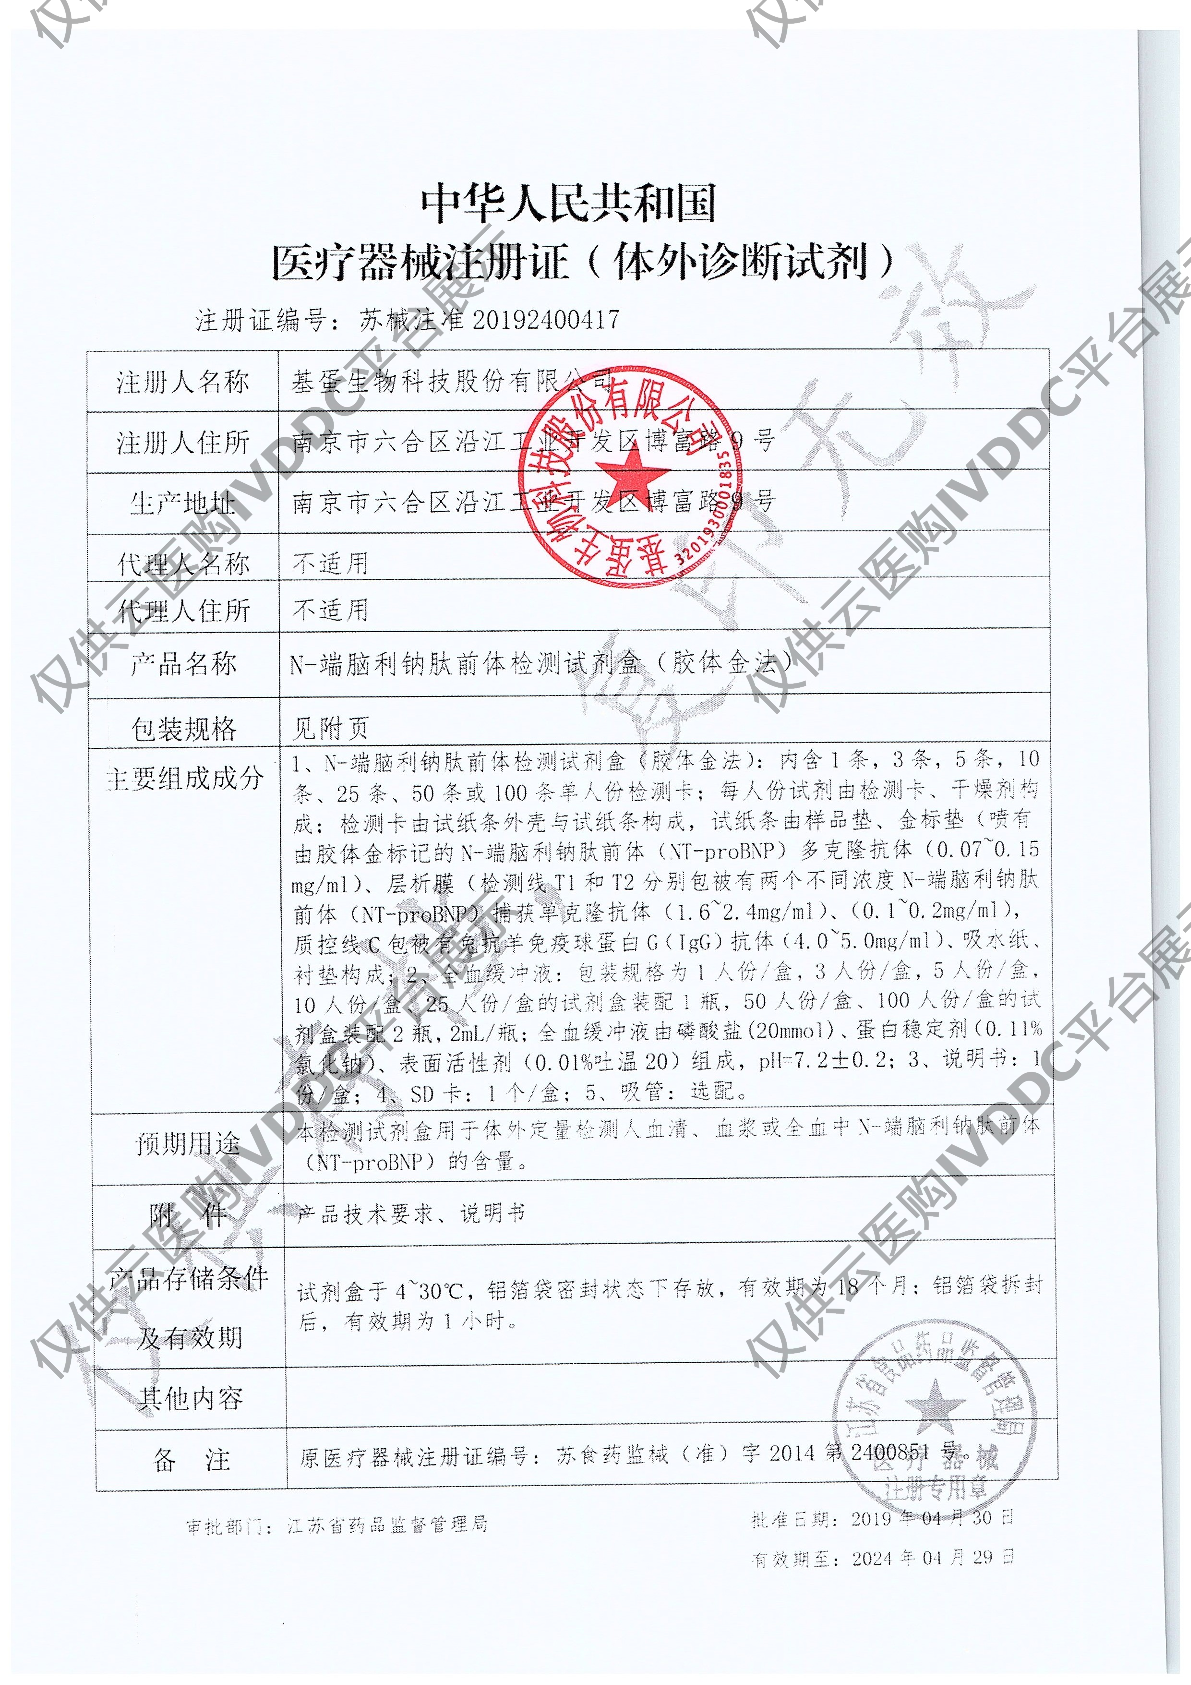 【基蛋】BNP(N-端脑利钠肽前体)(胶体金法)注册证